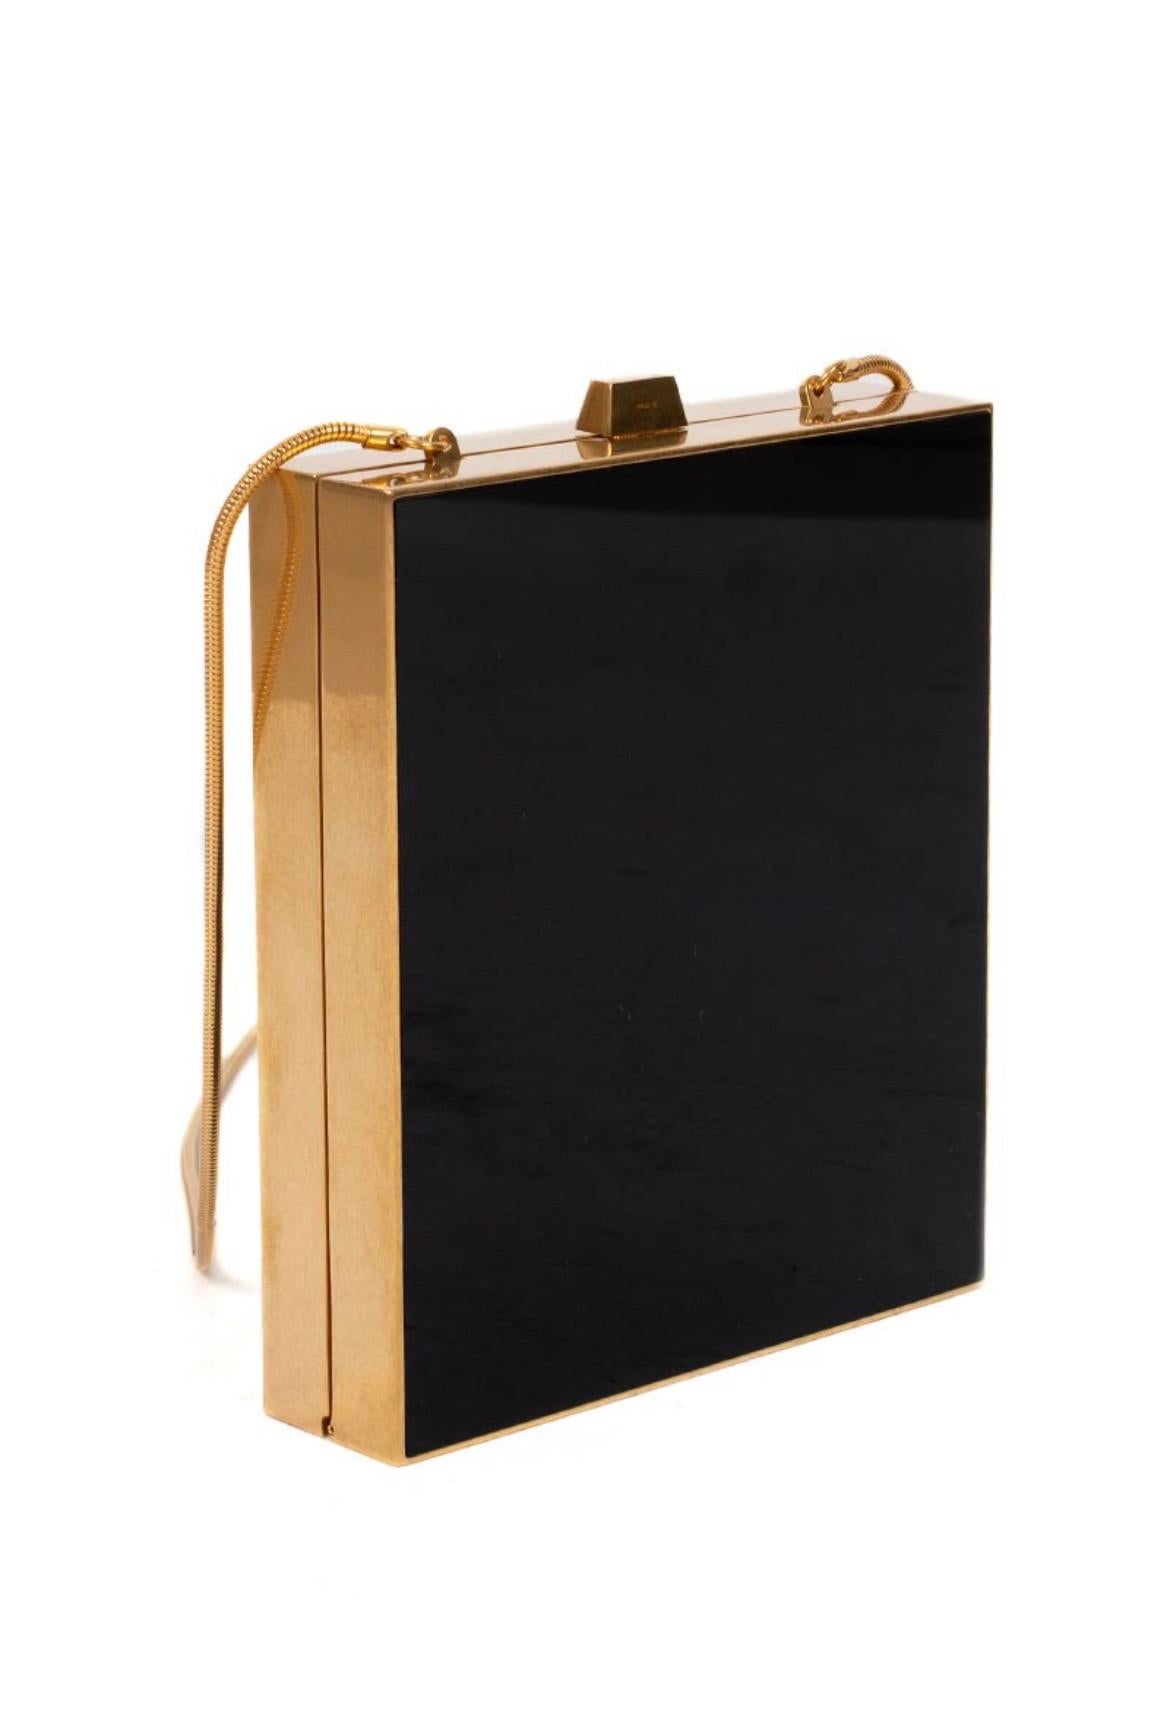 Borsa limited edition  Miniadure Tuxedo in plexiglass nero con hardware color oro. Condizioni: mai usata, spedita con dust bag e carte di autenticità.

Misure: larghezza 13.5 Cm X altezzan15.5 Cm X profindità 3.5 Cm X (Drop) 53.5 cm